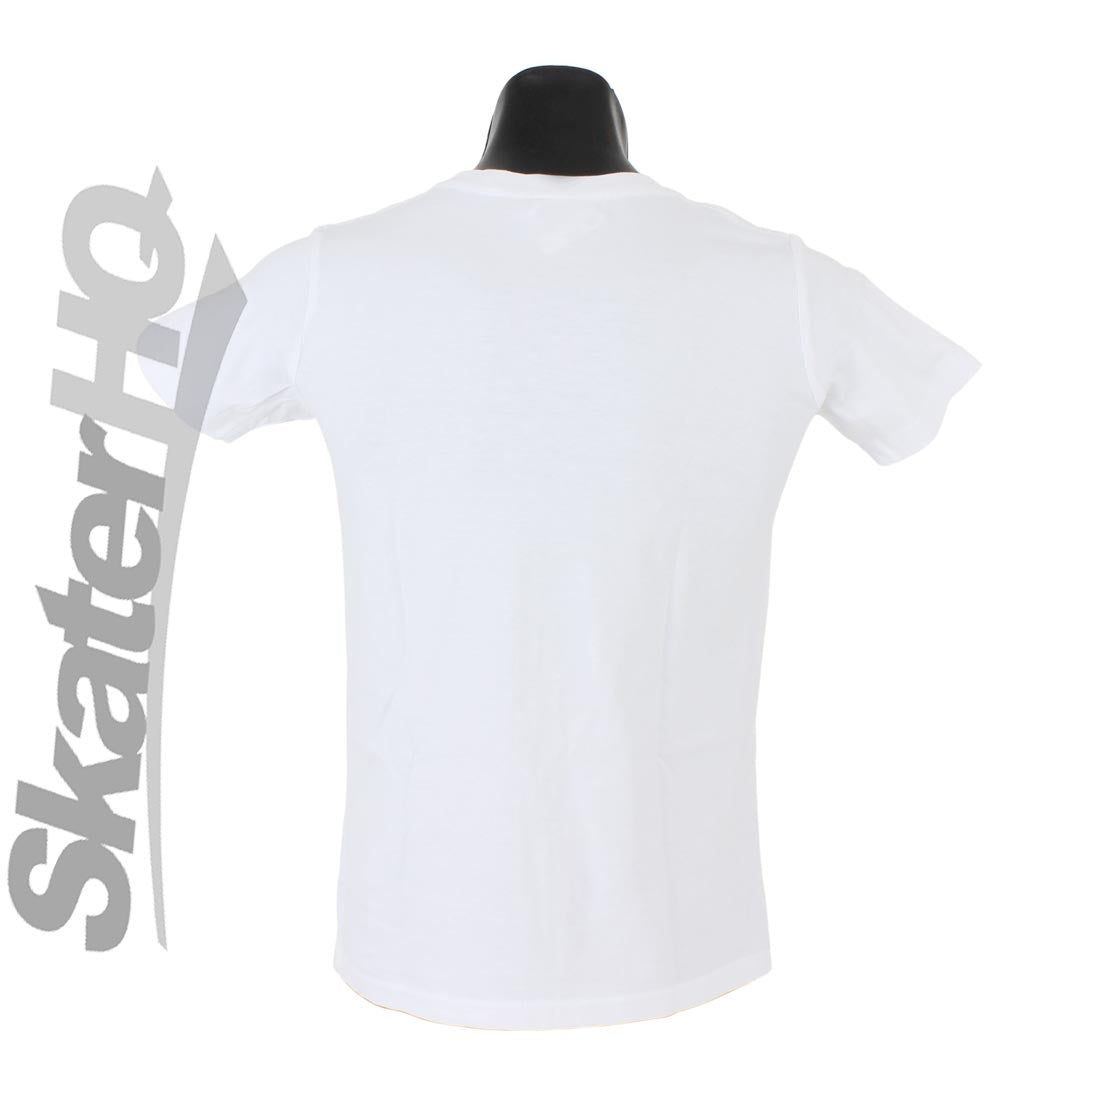 Skater HQ Kids Stacked T-Shirt - White Apparel Skater HQ Clothing